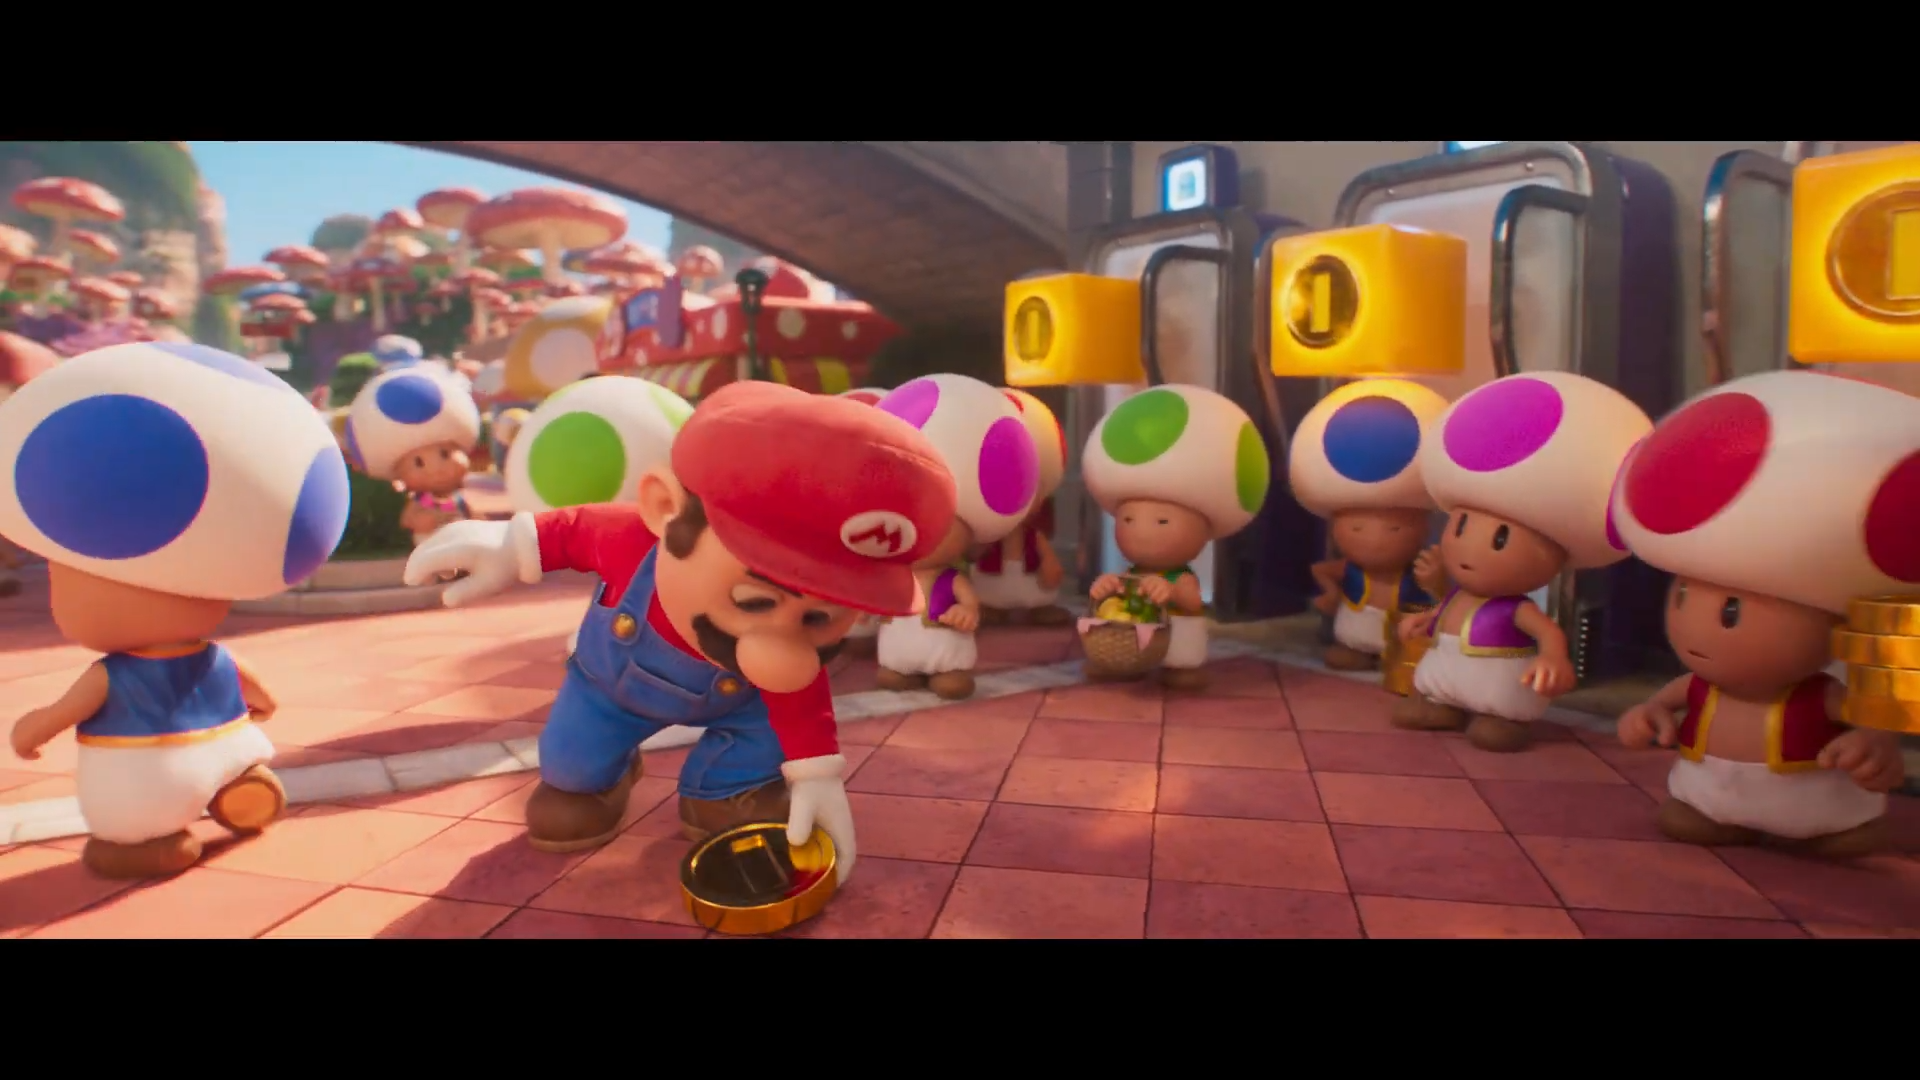 Ícone dos videogames, Super Mario protagonizará filme de animação